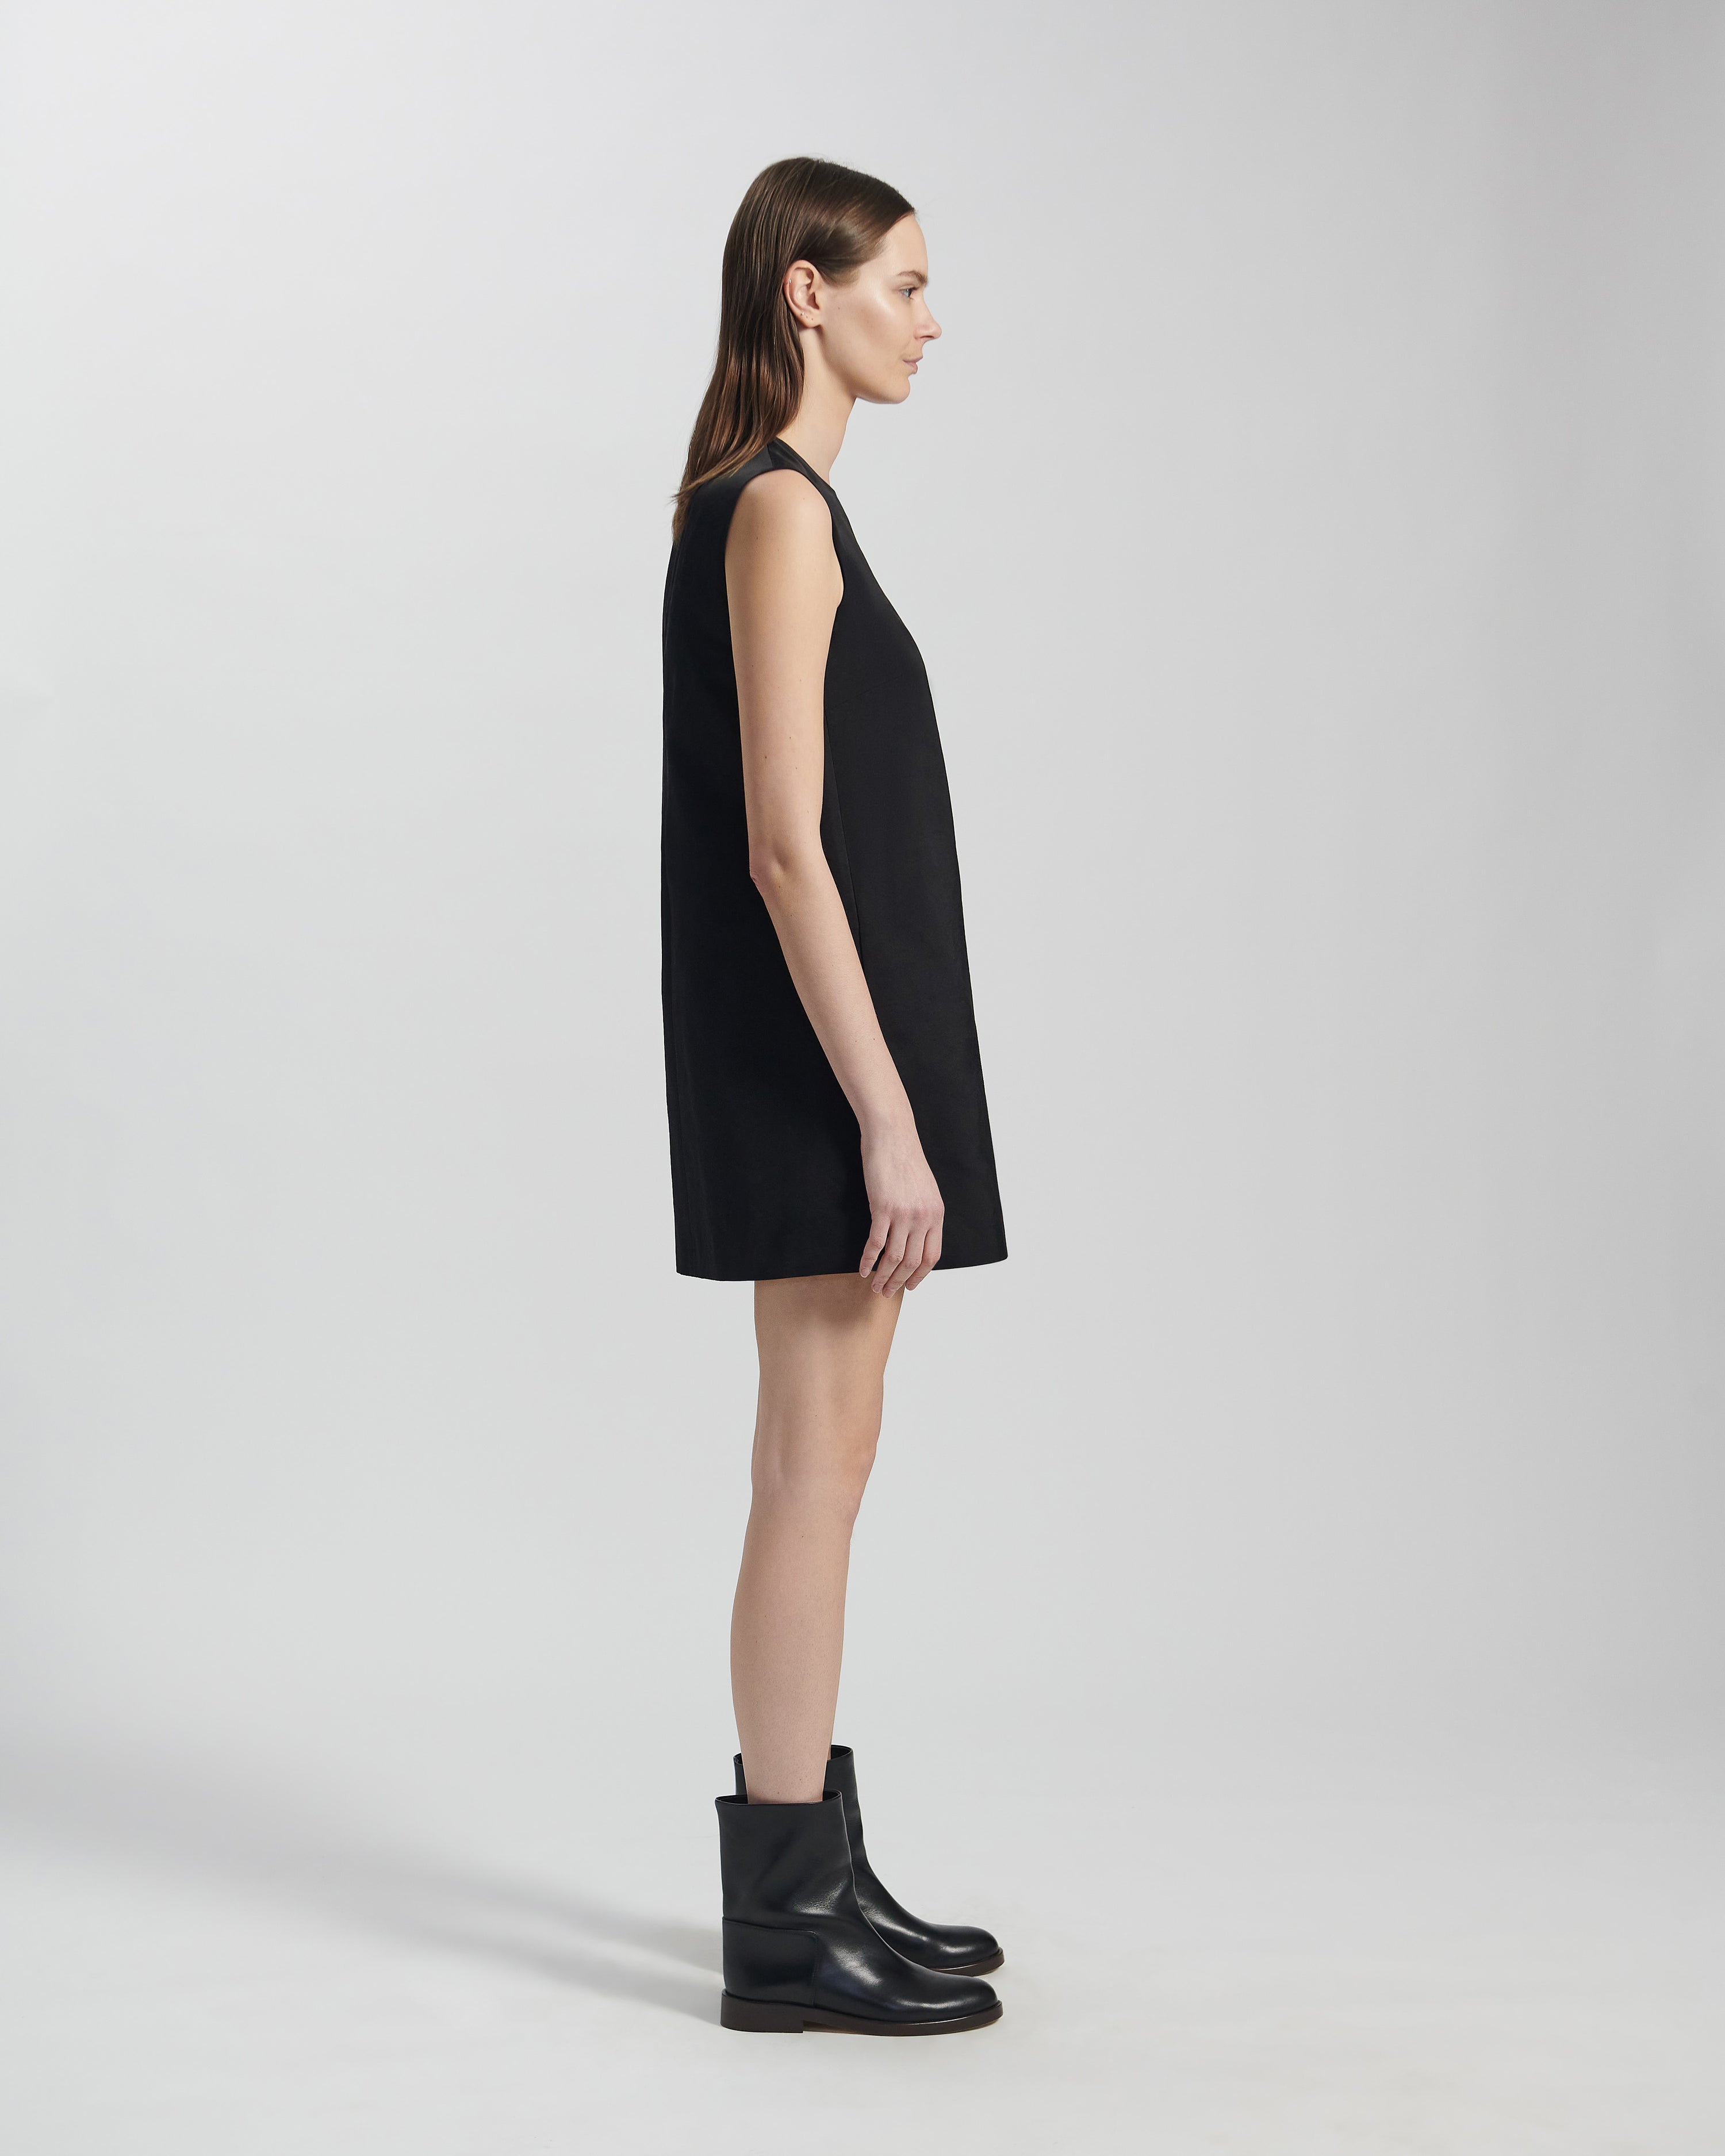 Sienna Dress in Peau De Soie, Black